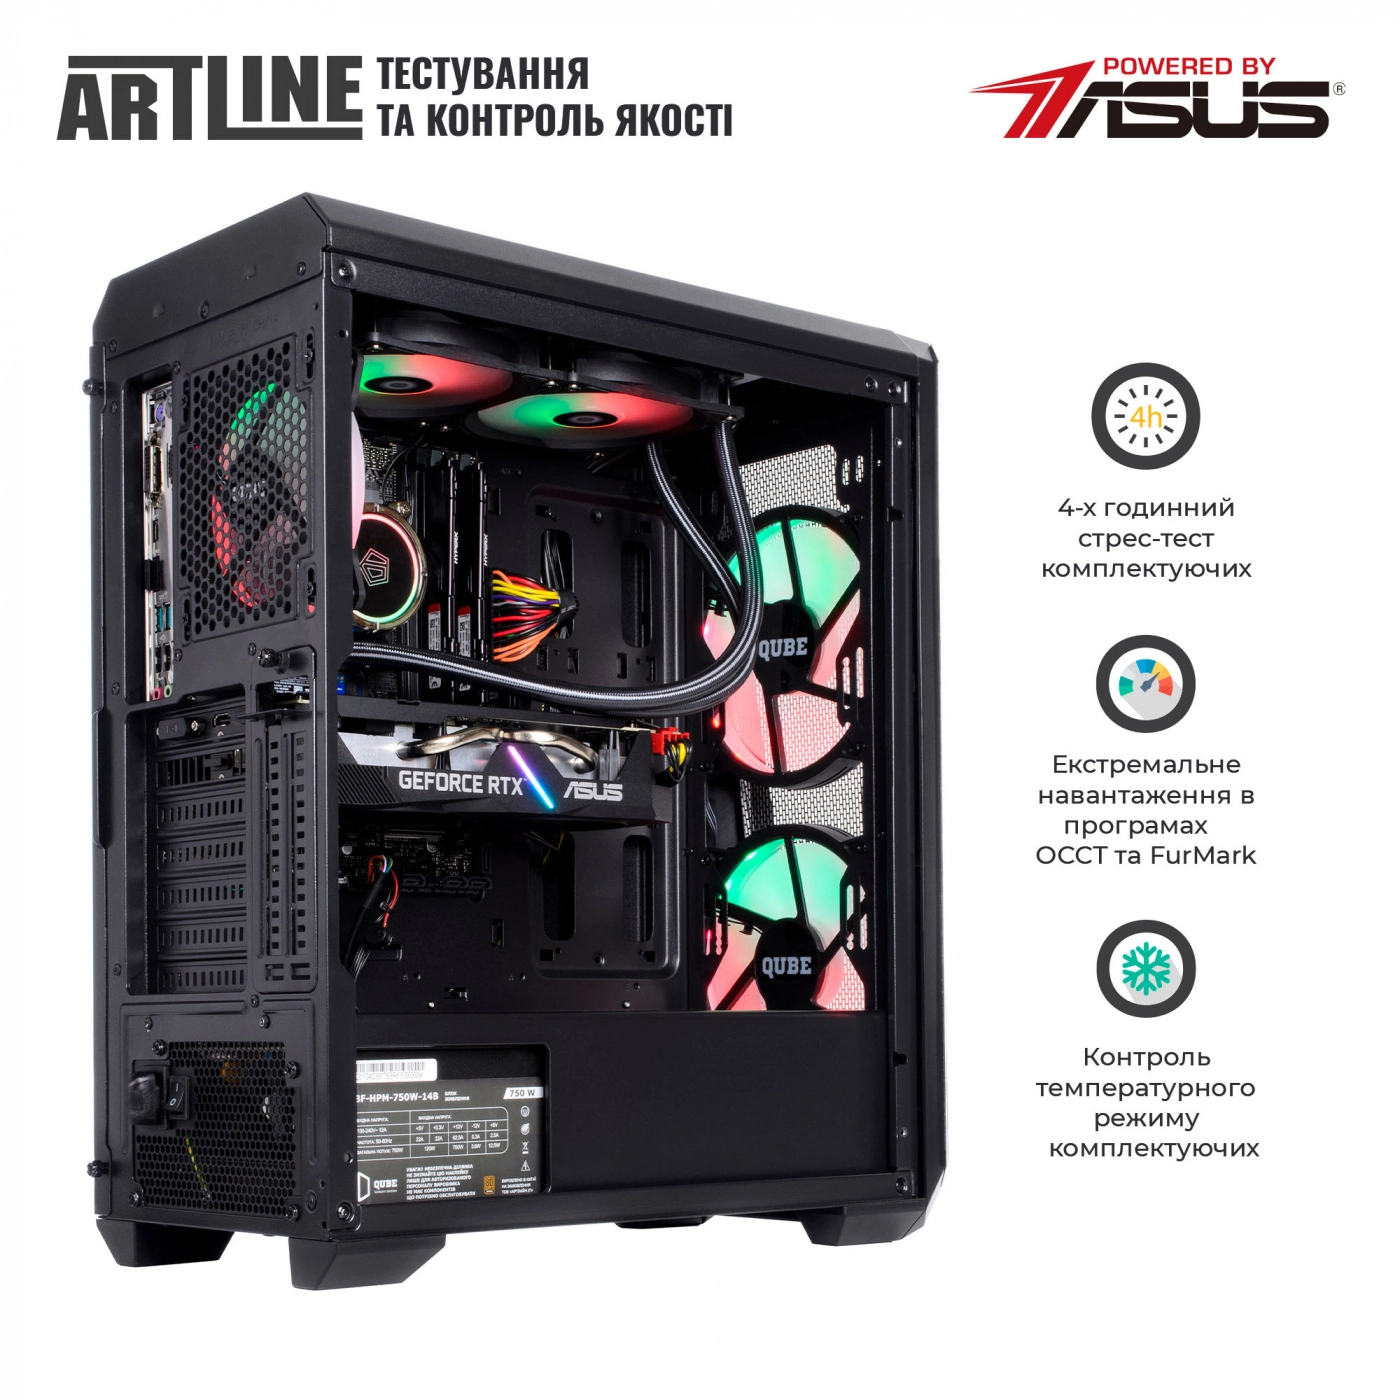 Купить Компьютер ARTLINE Gaming X79v68 - фото 7